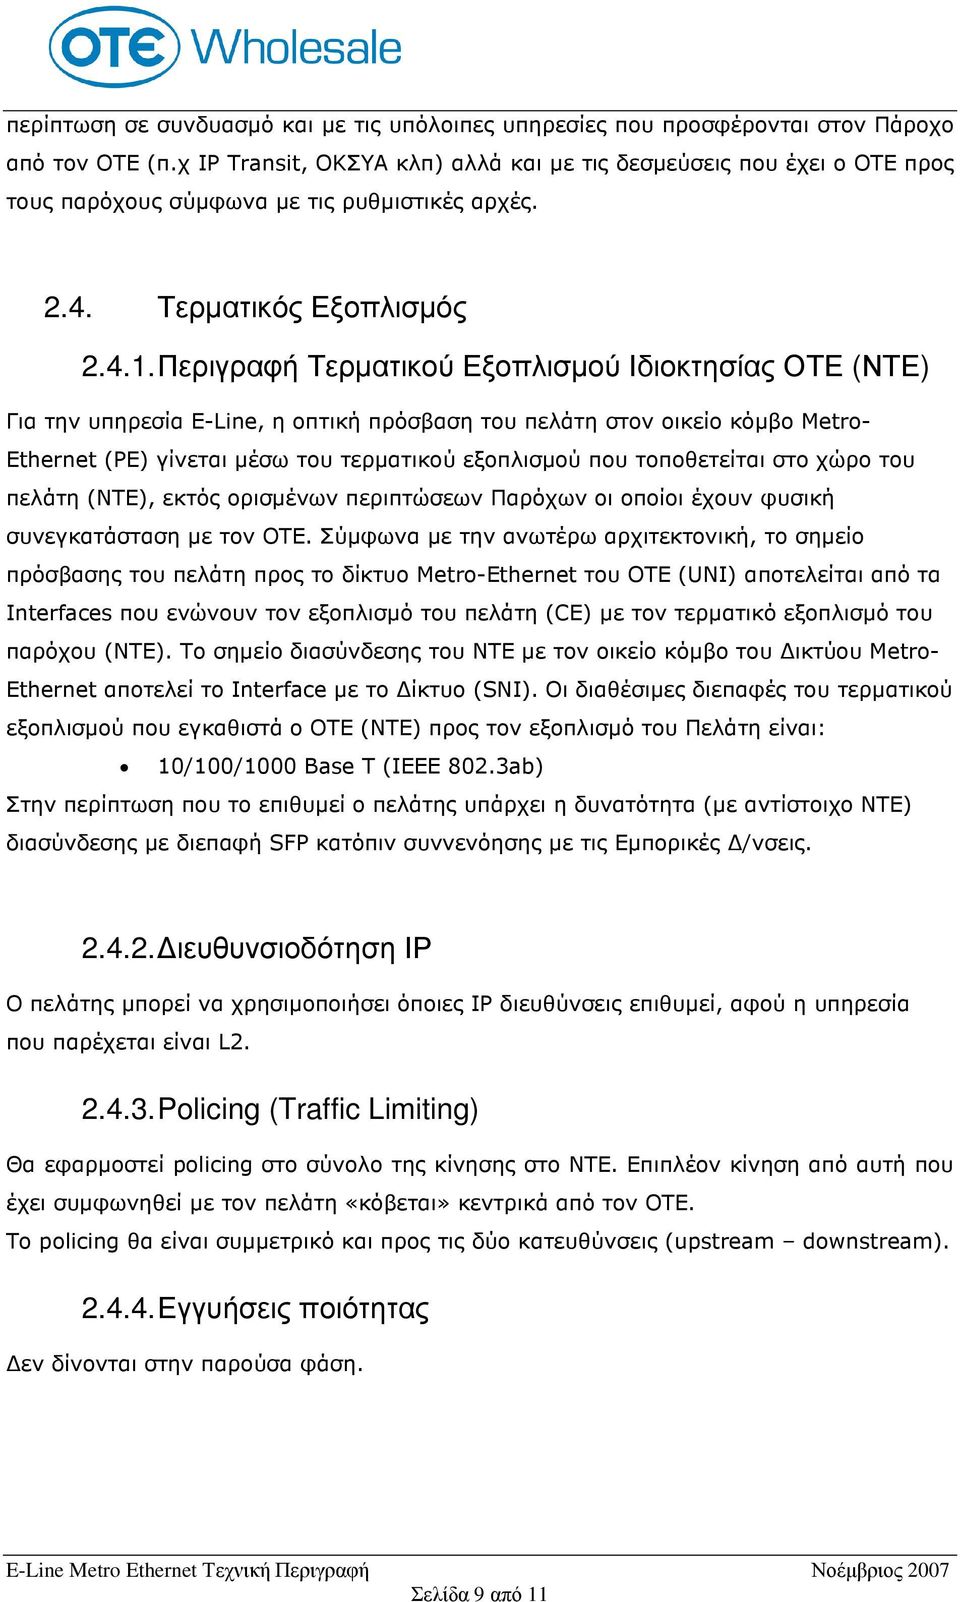 Περιγραφή Τερµατικού Εξοπλισµού Ιδιοκτησίας ΟΤΕ (ΝΤΕ) Για την υπηρεσία E-Line, η οπτική πρόσβαση του πελάτη στον οικείο κόµβο Metro- Ethernet (PE) γίνεται µέσω του τερµατικού εξοπλισµού που